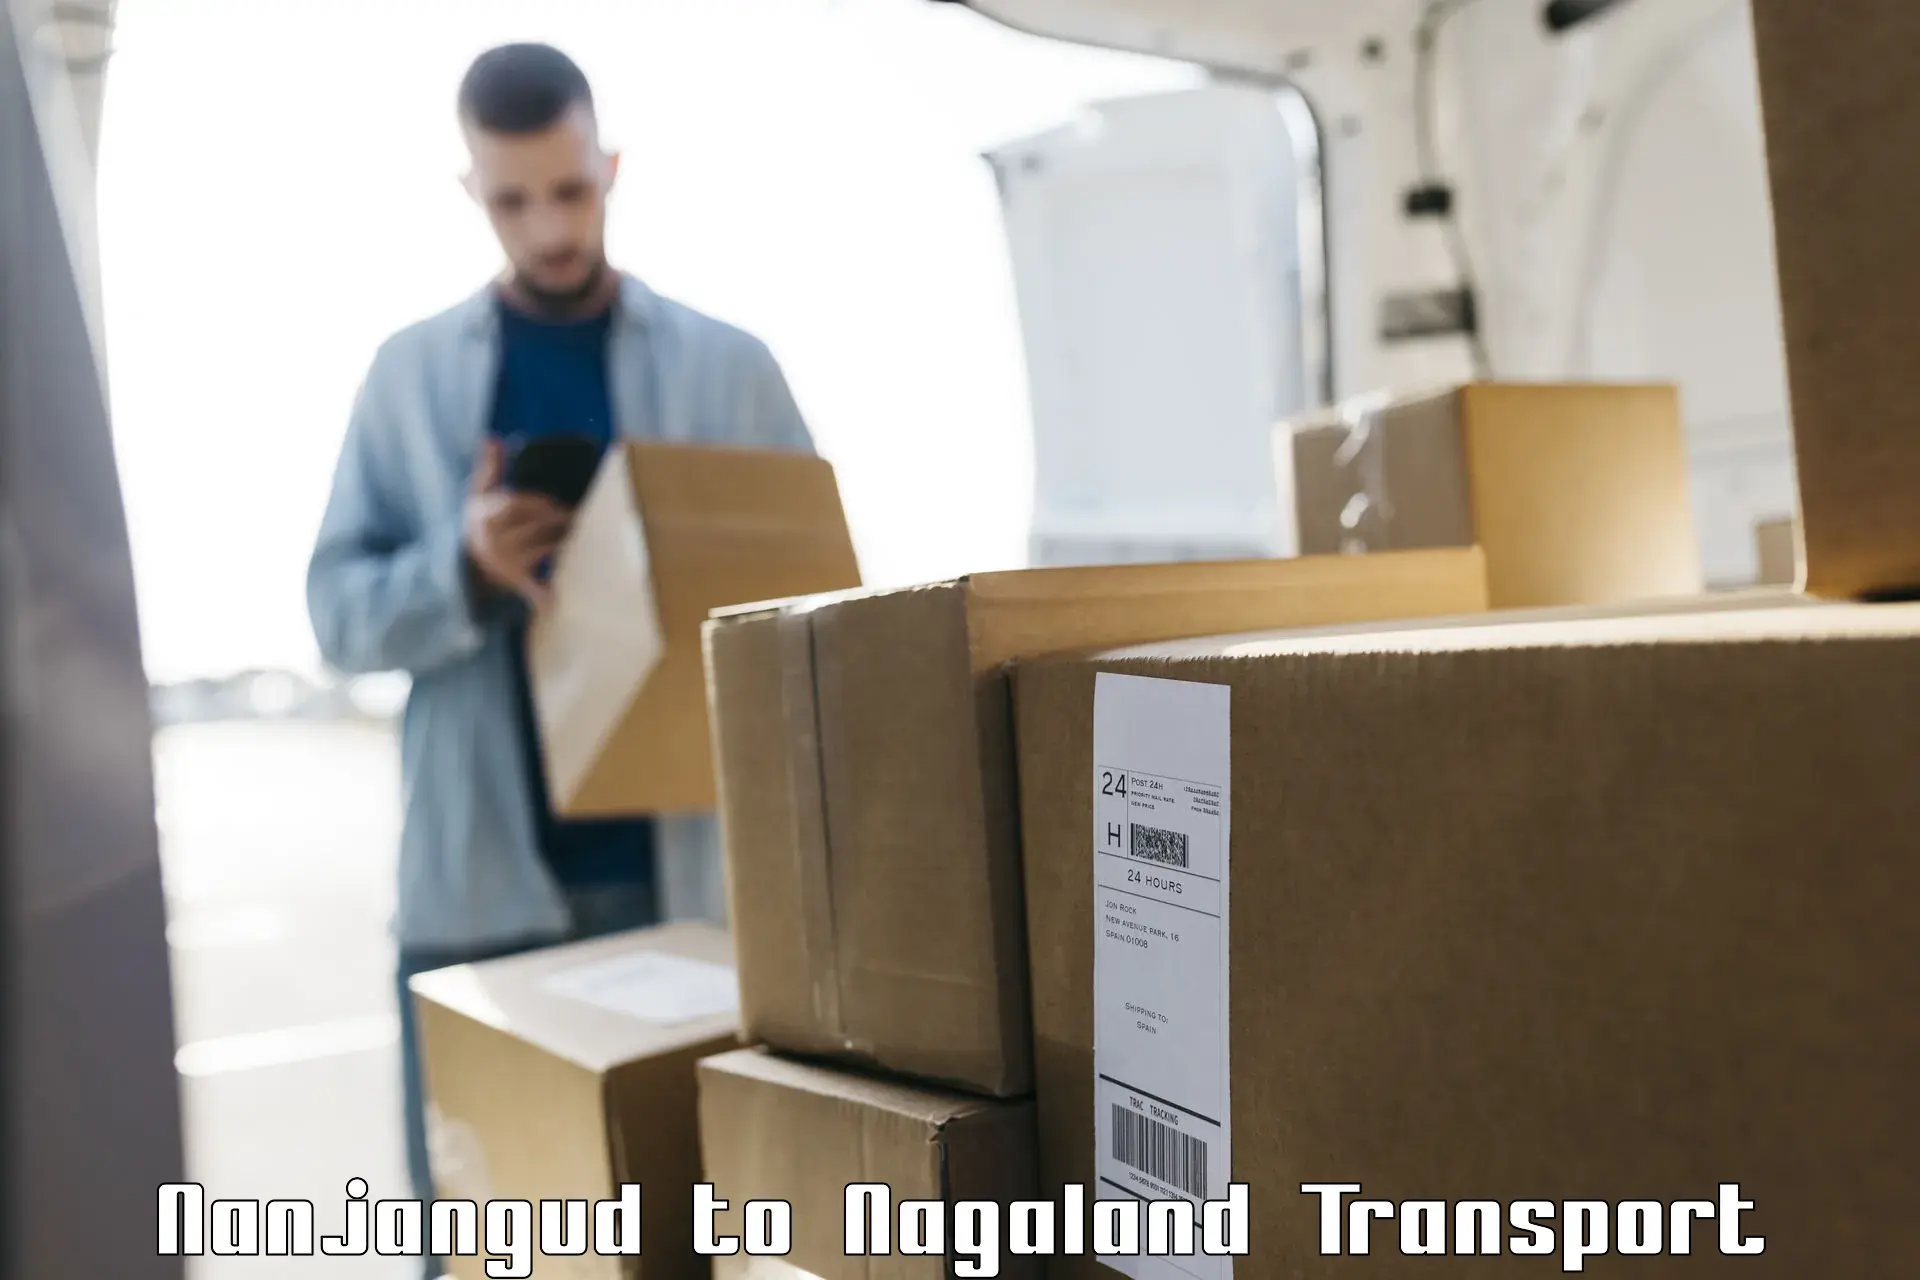 Nearest transport service Nanjangud to Dimapur